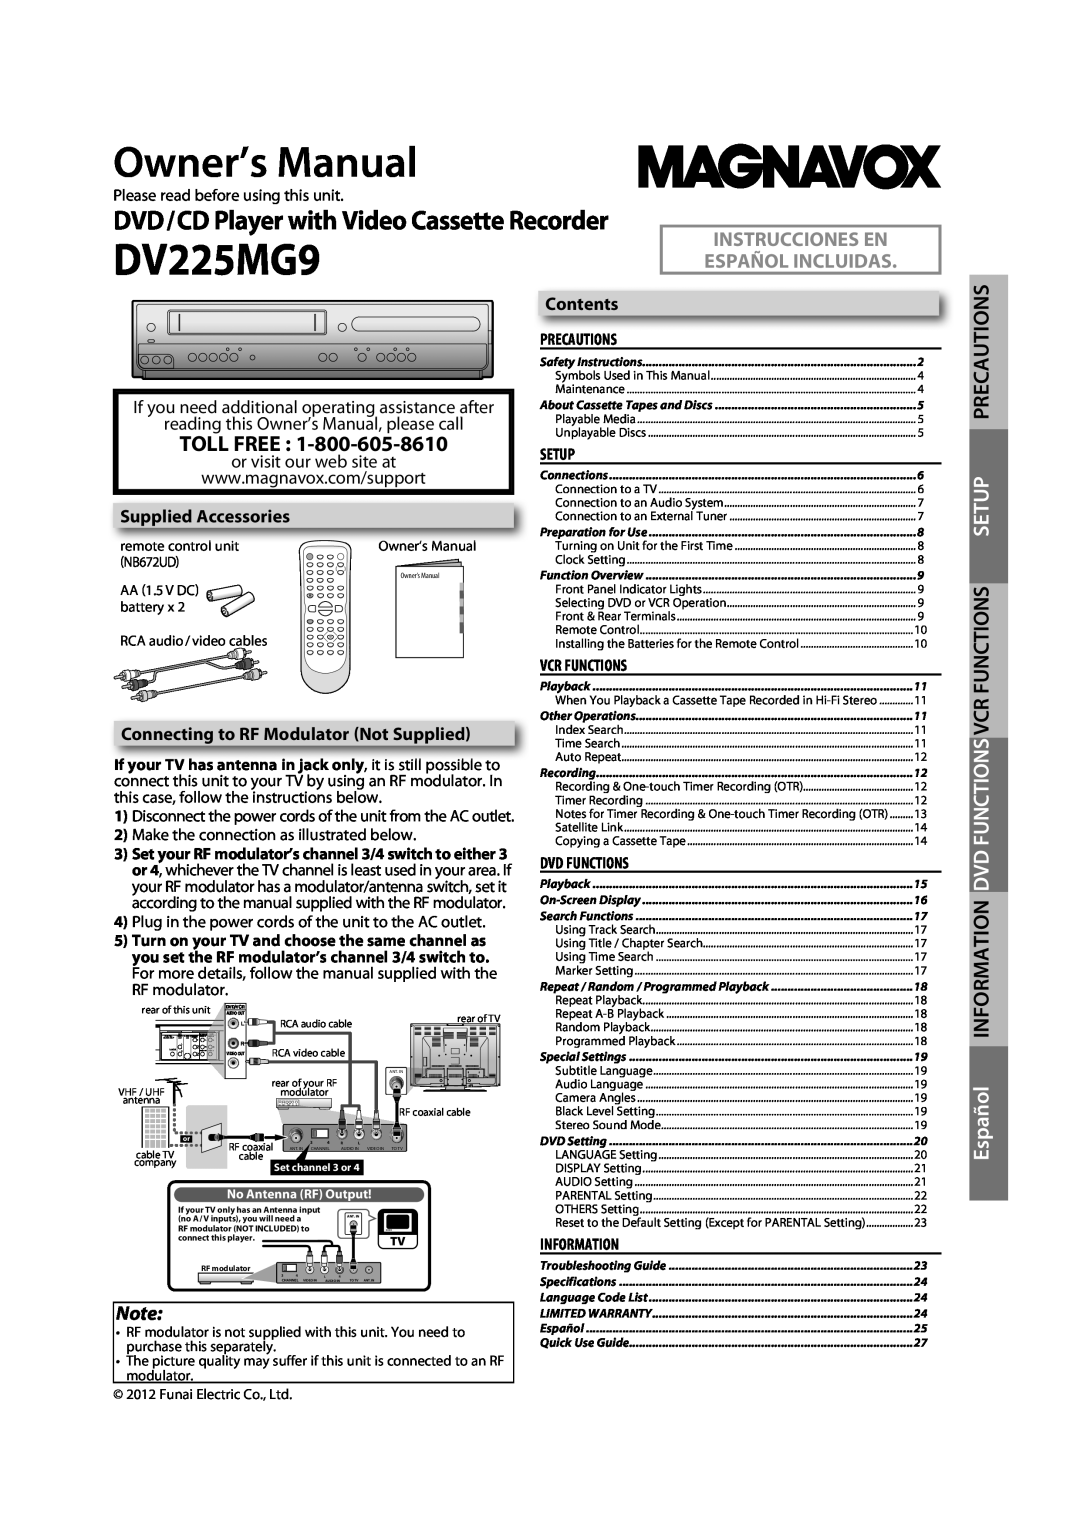 Magnavox DV225MG9 manual Magnavox Dv225mg9 Manual, Table of Contents 